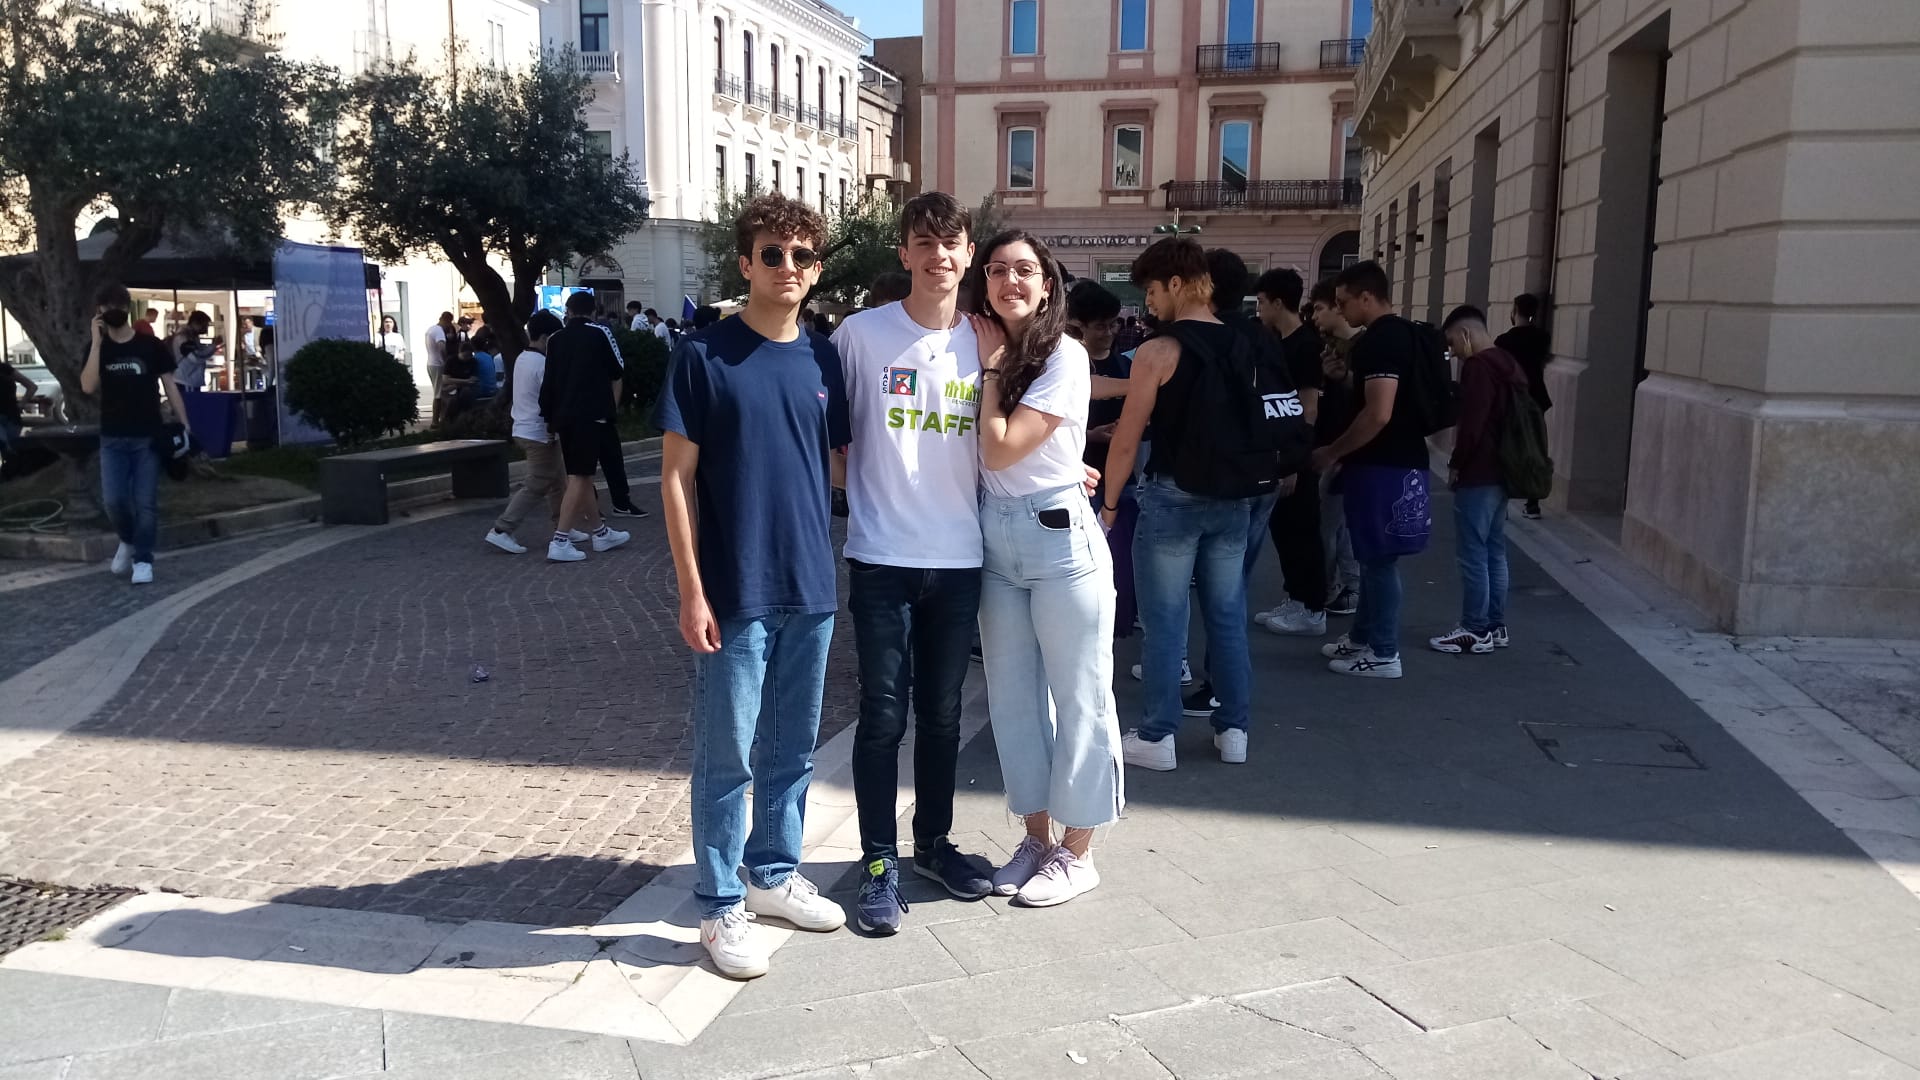 Benevento\Al Corso Garibaldi la Giornata della creativita’ studentesca